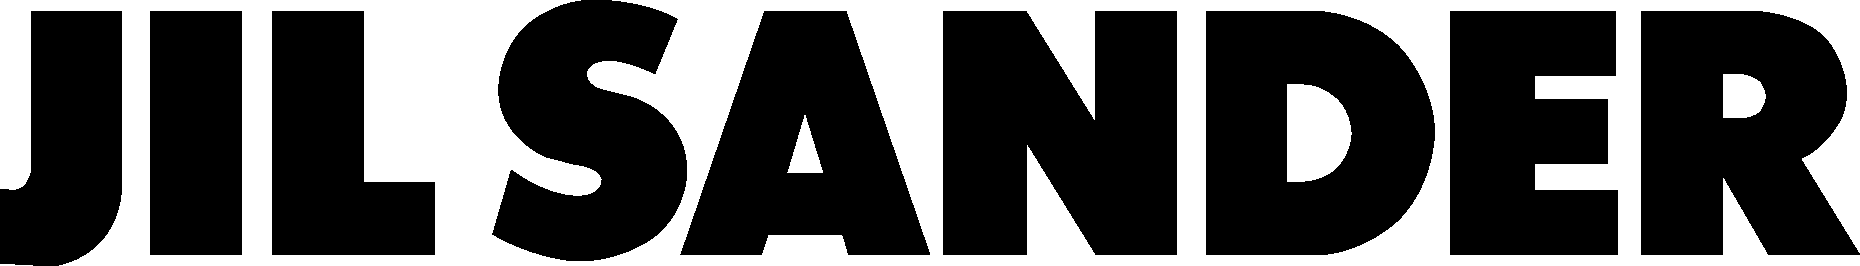 Jil Sander Logo - PNG Logo Vector Downloads (SVG, EPS)